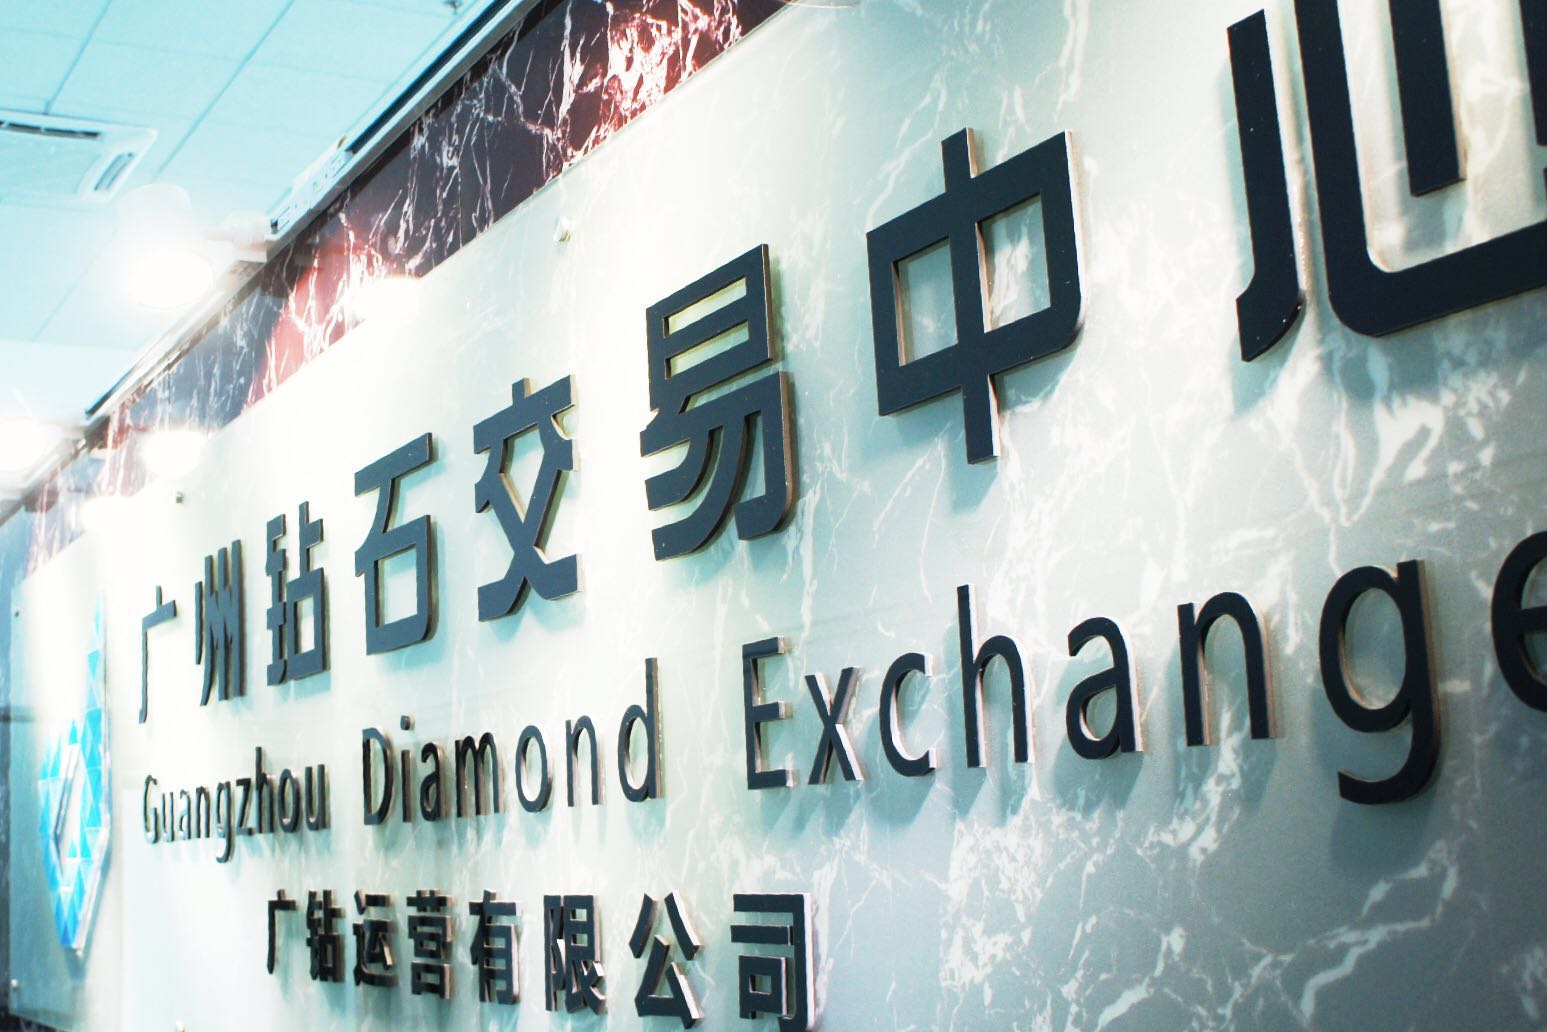 广州钻石交易中心去年实现钻石进出口并挂牌交易